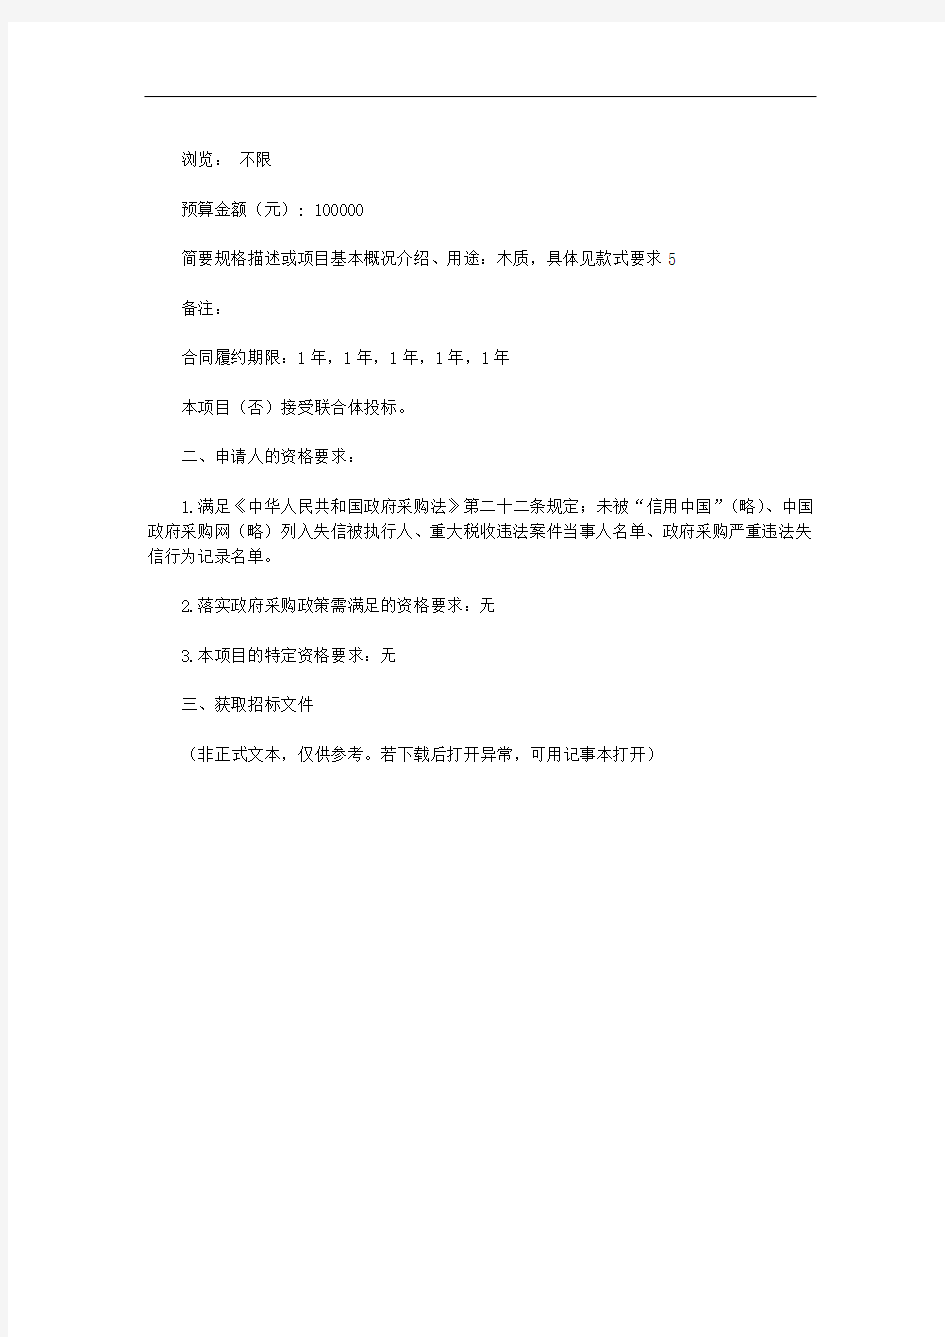 浙江天成项目管理有限公司关于慈溪市殡仪馆骨灰盒采购项目的公开招标公告